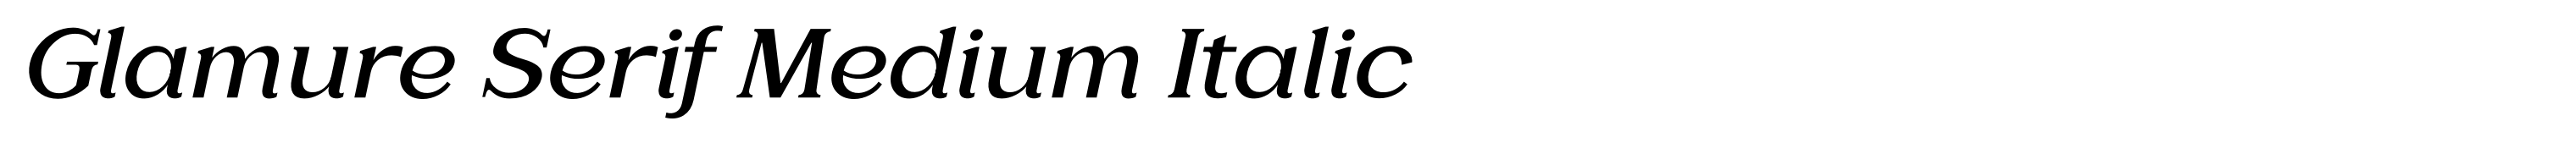 Glamure Serif Medium Italic